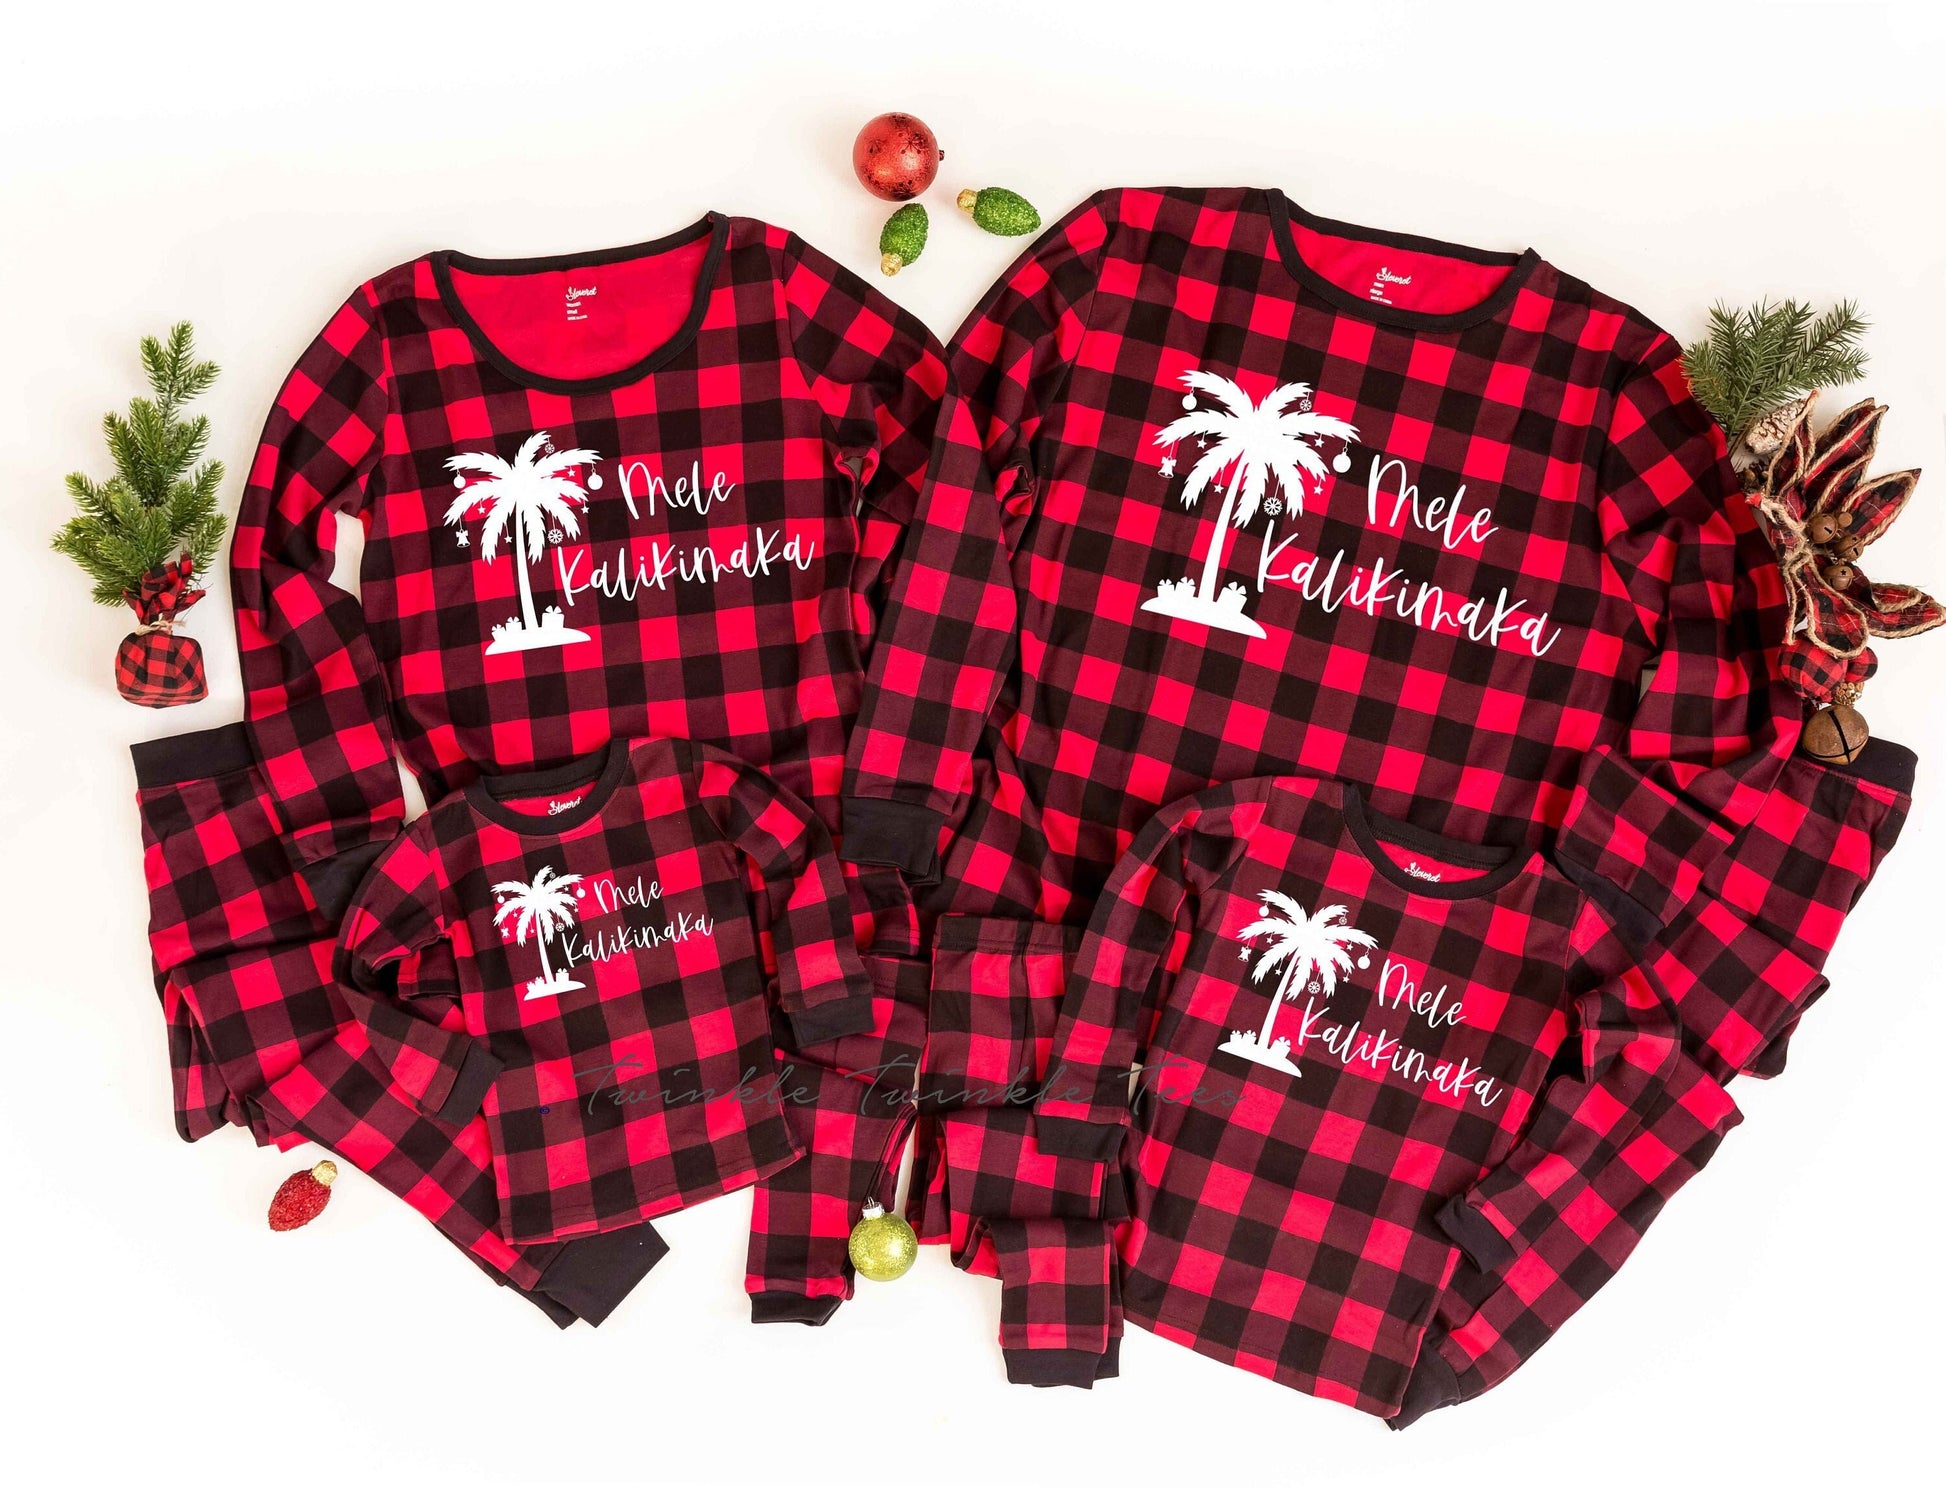 Red Plaid Mele Kalikimaka Christmas Pajamas - Christmas in Hawaii Pajamas - Beach Christmas